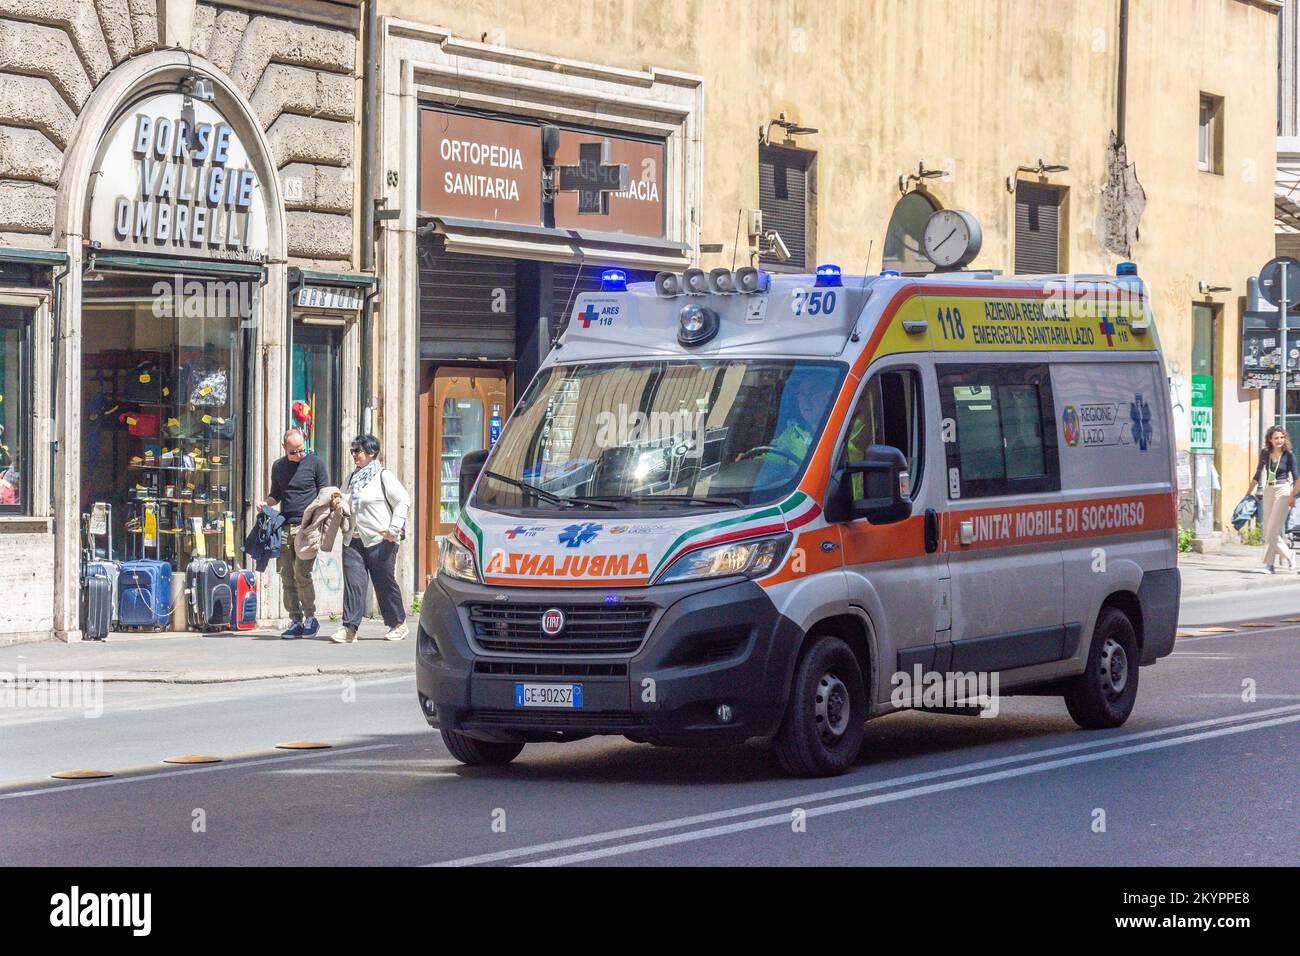 Ambulance sur appel, Corso Vittorio Emanuele II, centre de Rome, Rome (Roma), région du Latium, Italie Banque D'Images